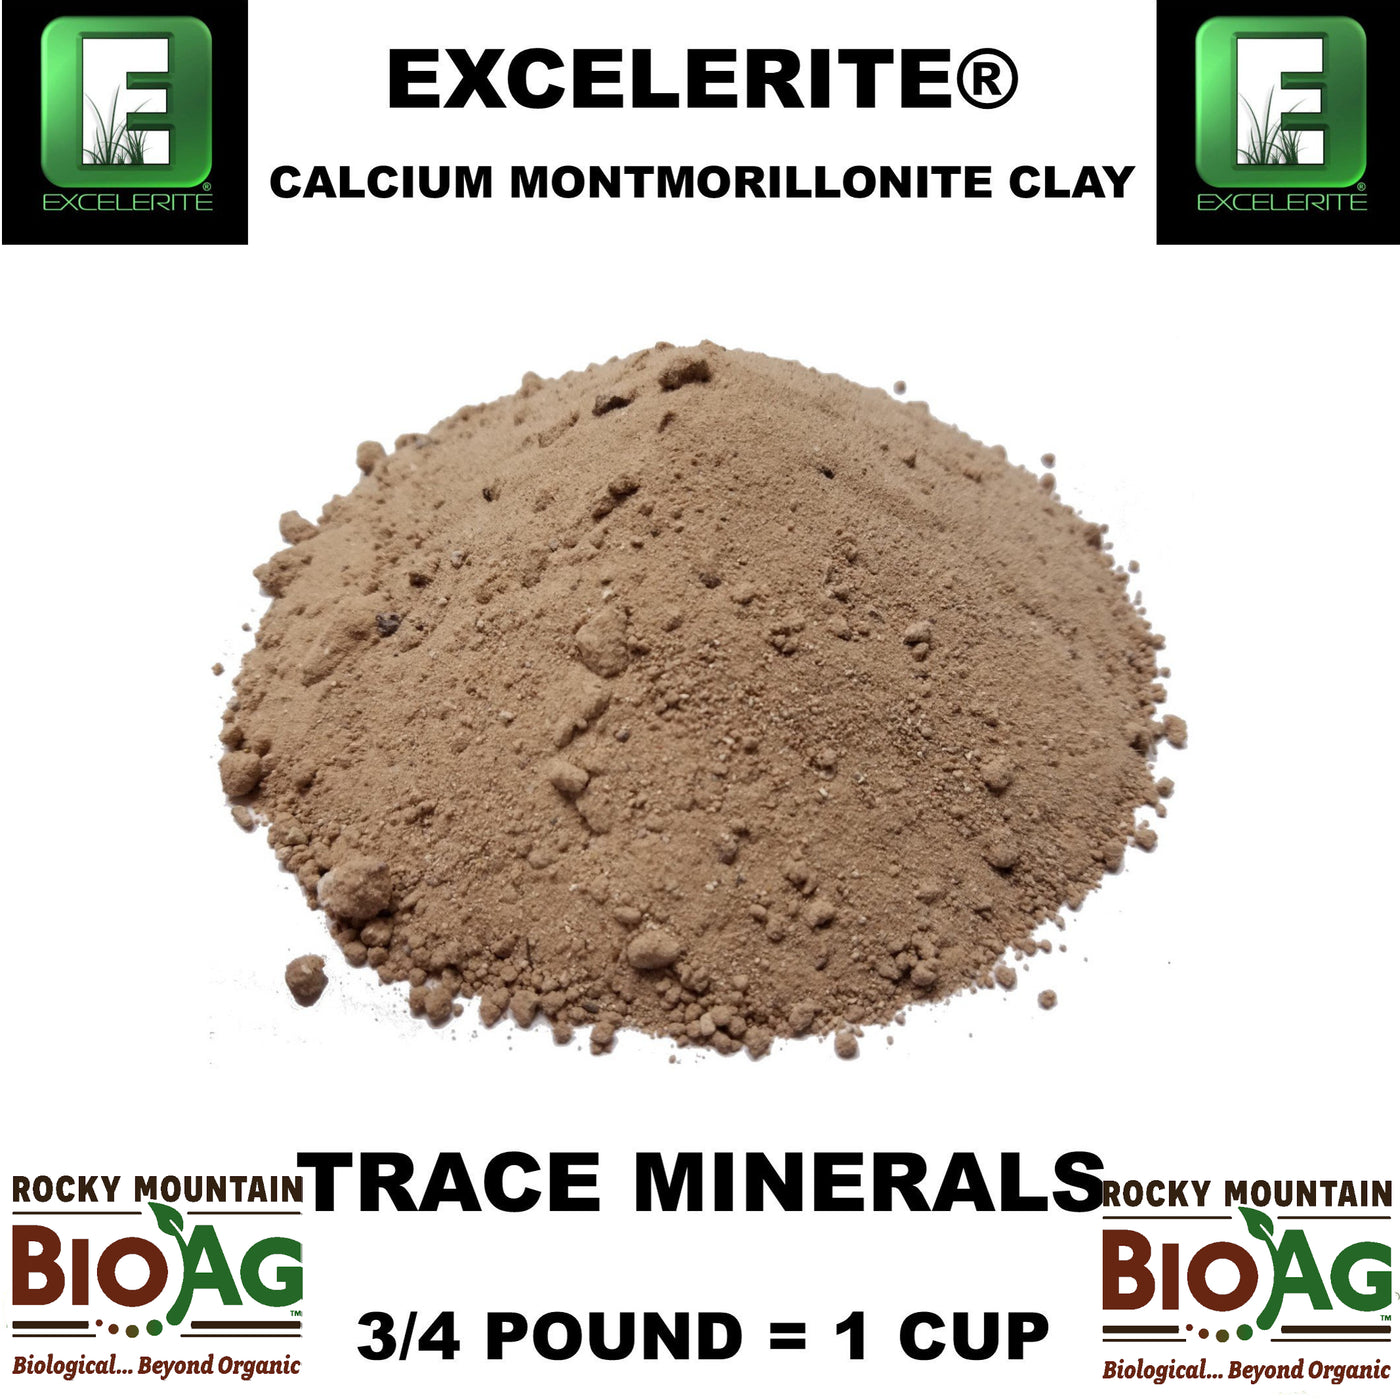 Excellerite Calcium Montmorillonite Clay